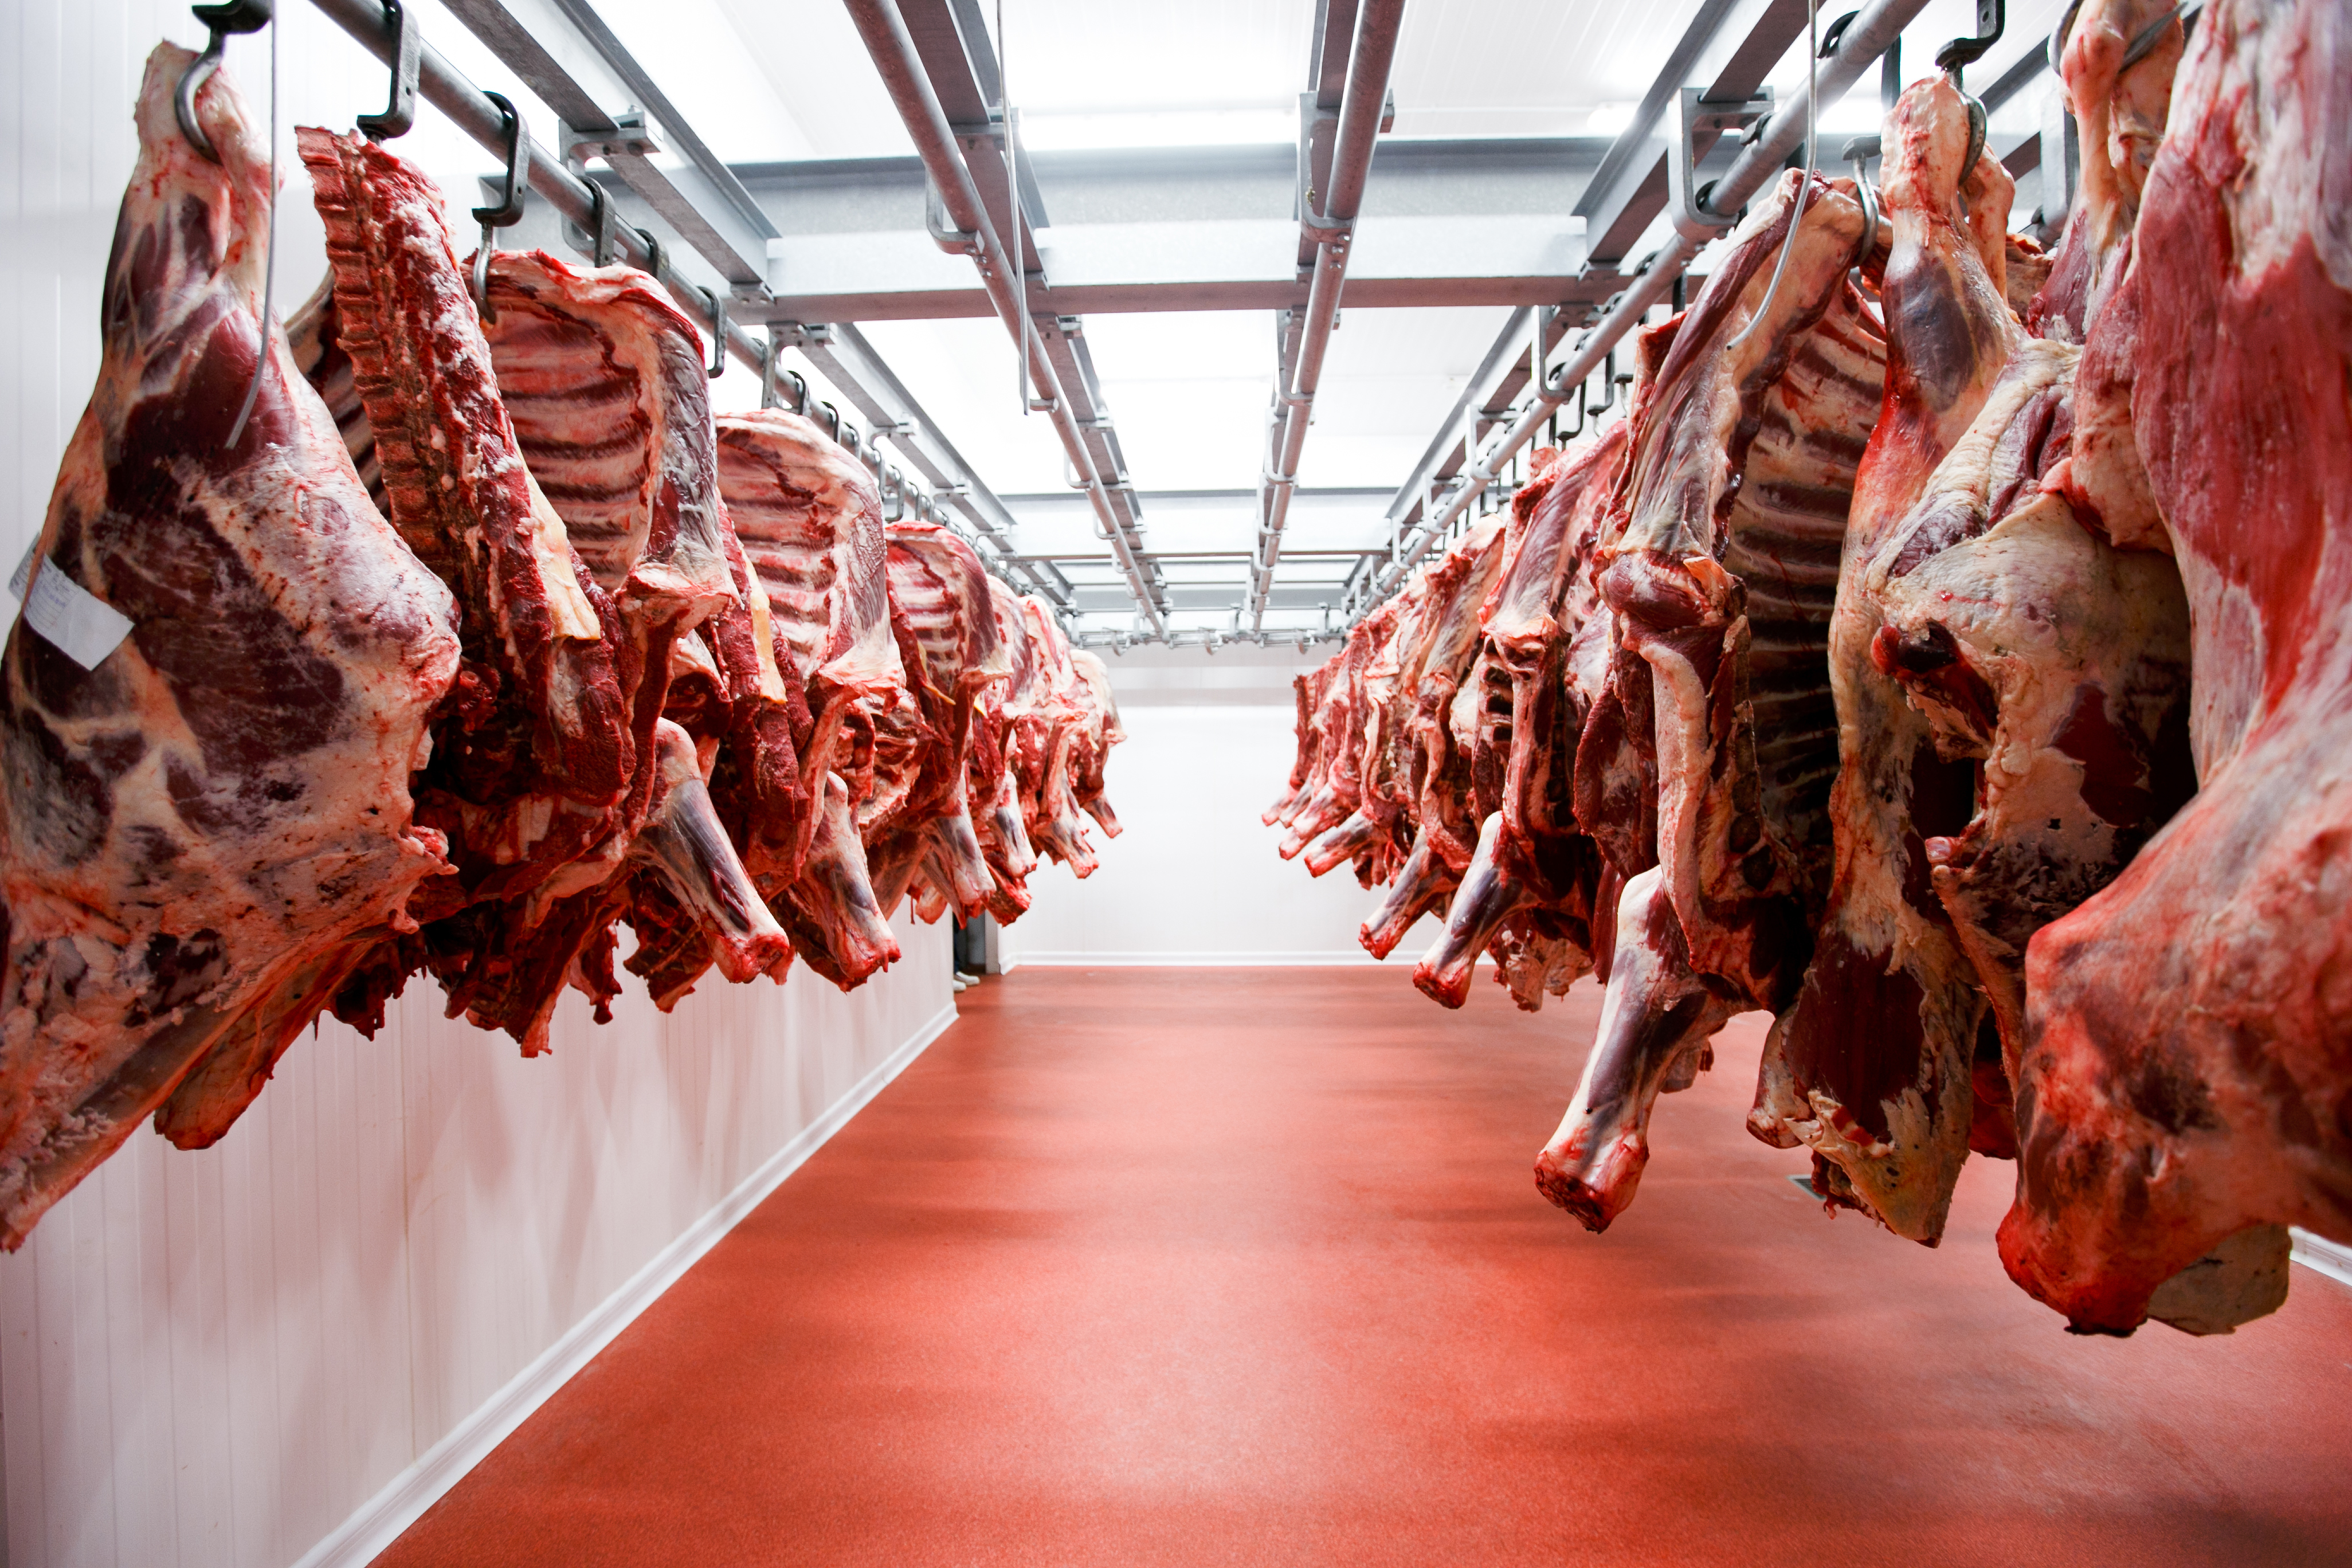 46 ألف طن الإنتاج المحلي للسلطنة من "اللحوم الحمراء" بنهاية 2018